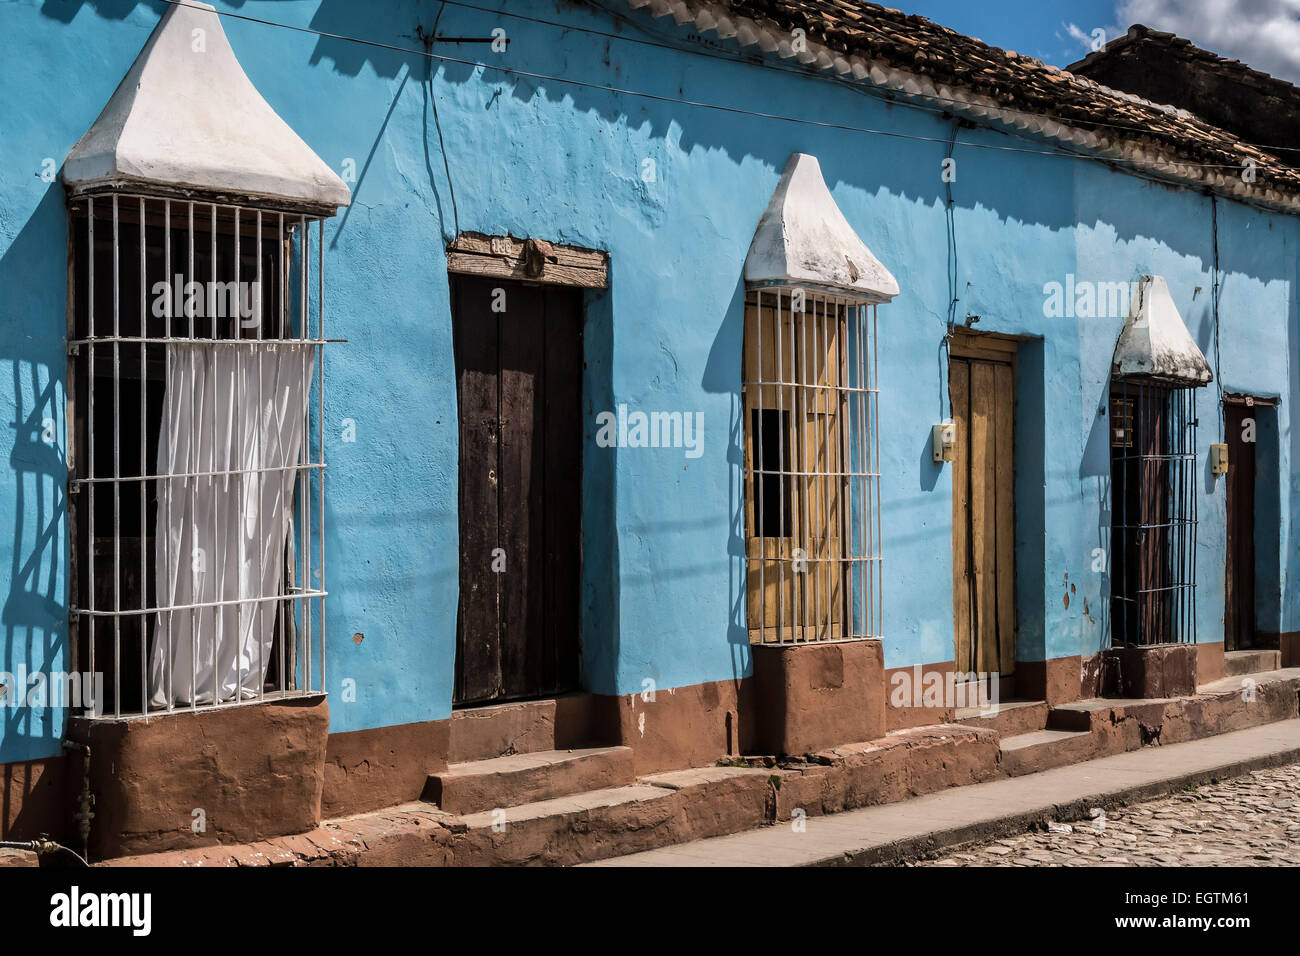 Les résidences peint pastel typiques avec fenêtre woks, Trinidad, Cuba. Banque D'Images